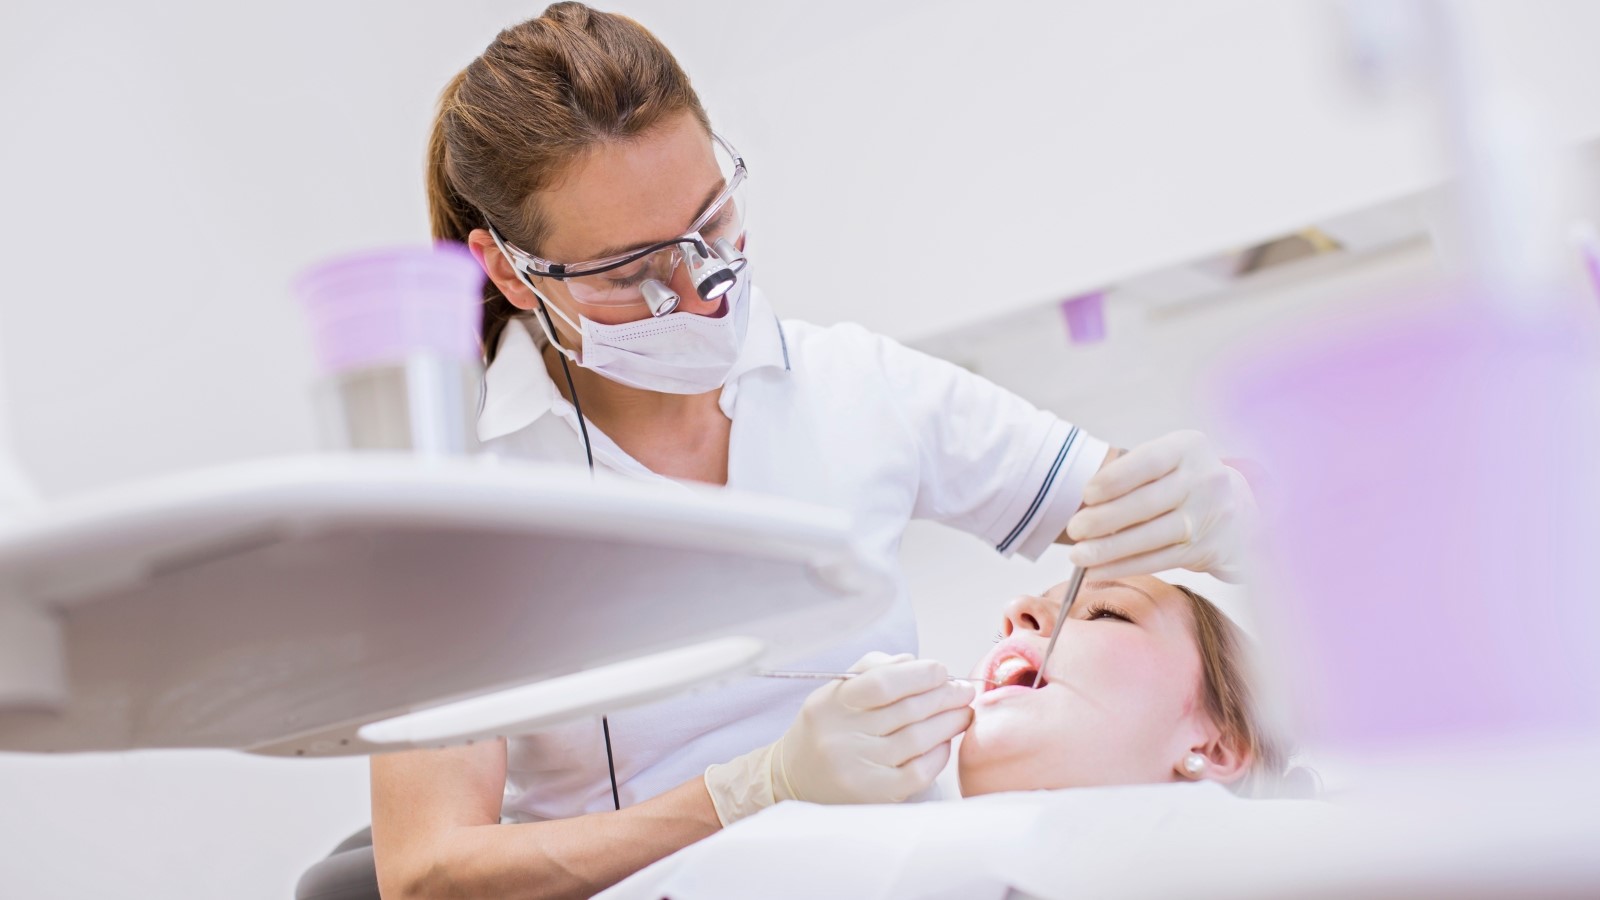 En tandläkare står böjd över en patient och undersöker patientens tänder.